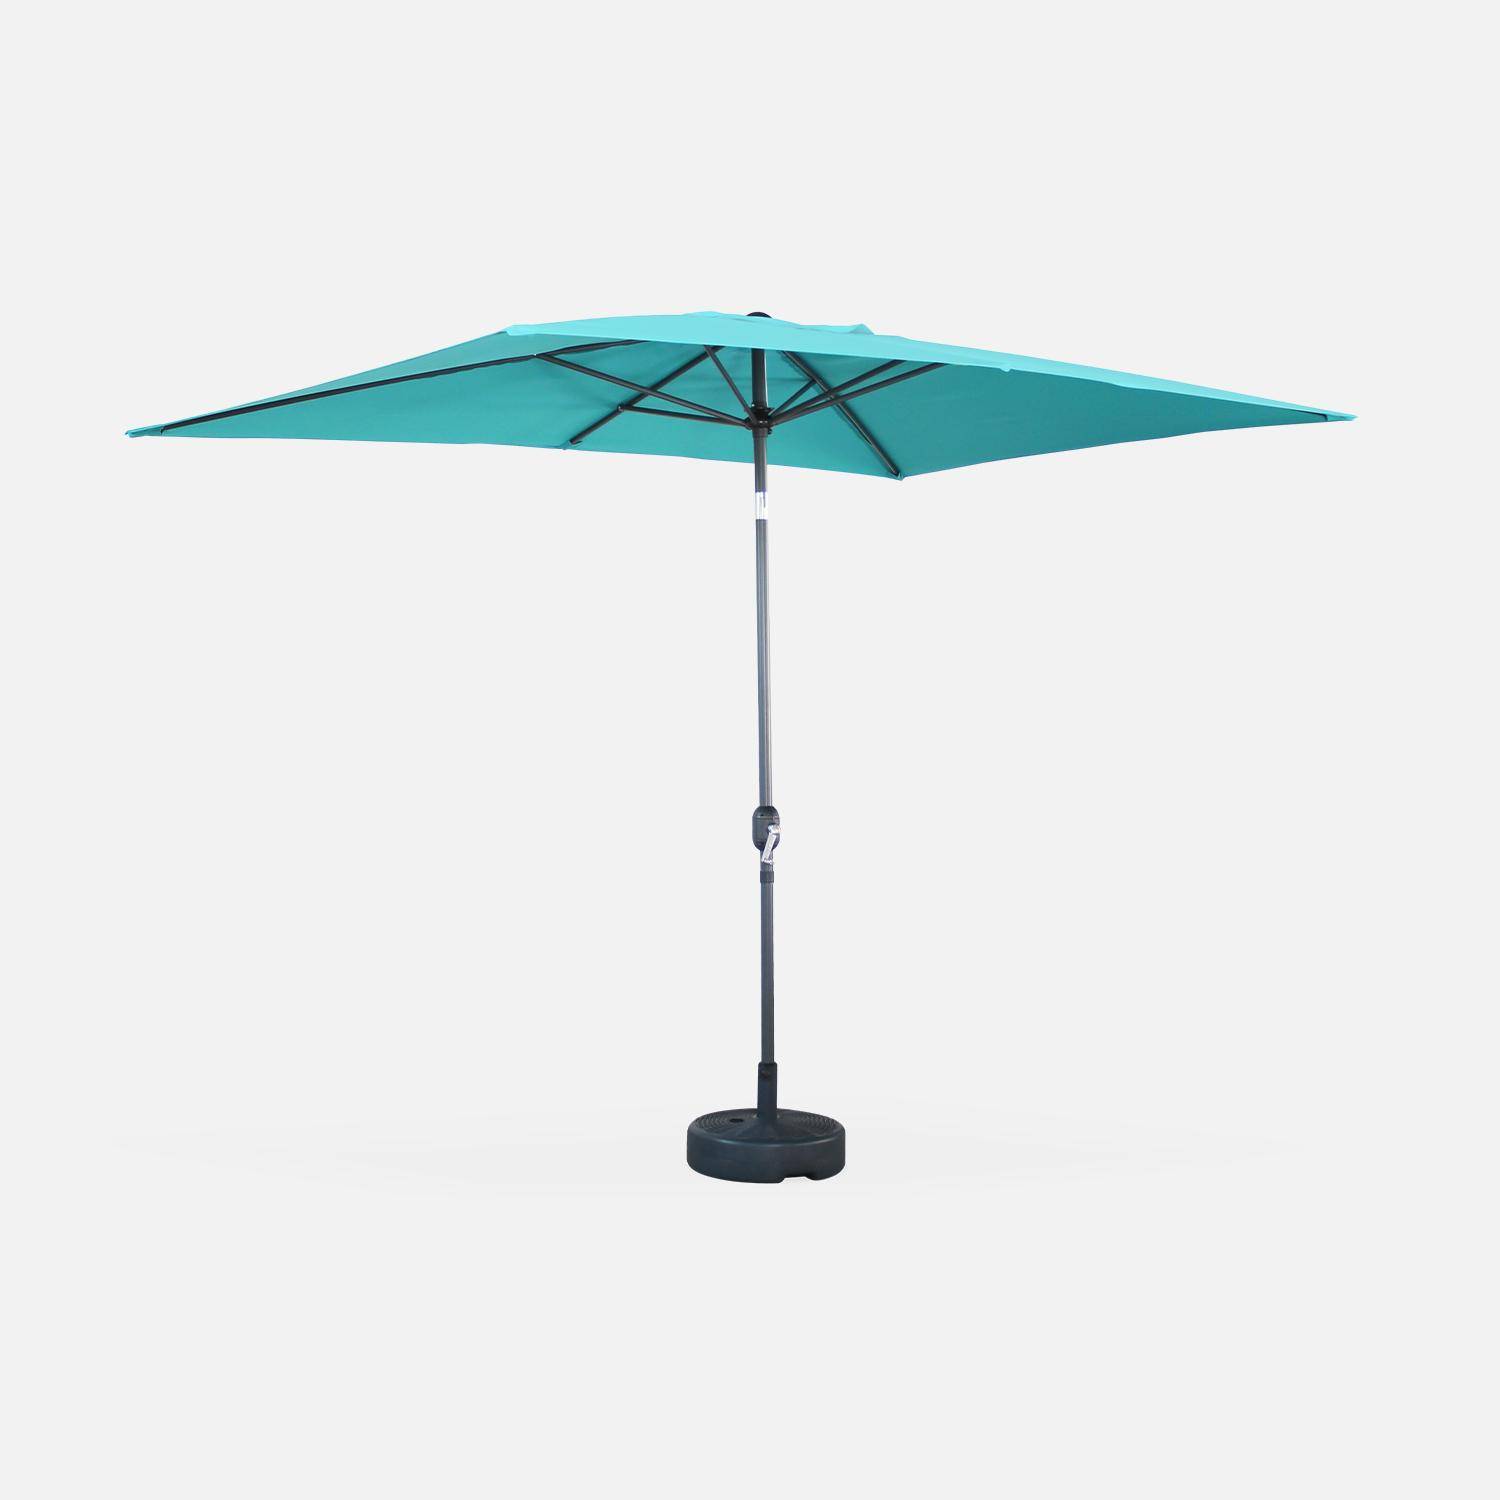 Parasol droit rectangulaire 2x3m - Touquet Turquoise - mât central en aluminium orientable et manivelle d'ouverture,sweeek,Photo2